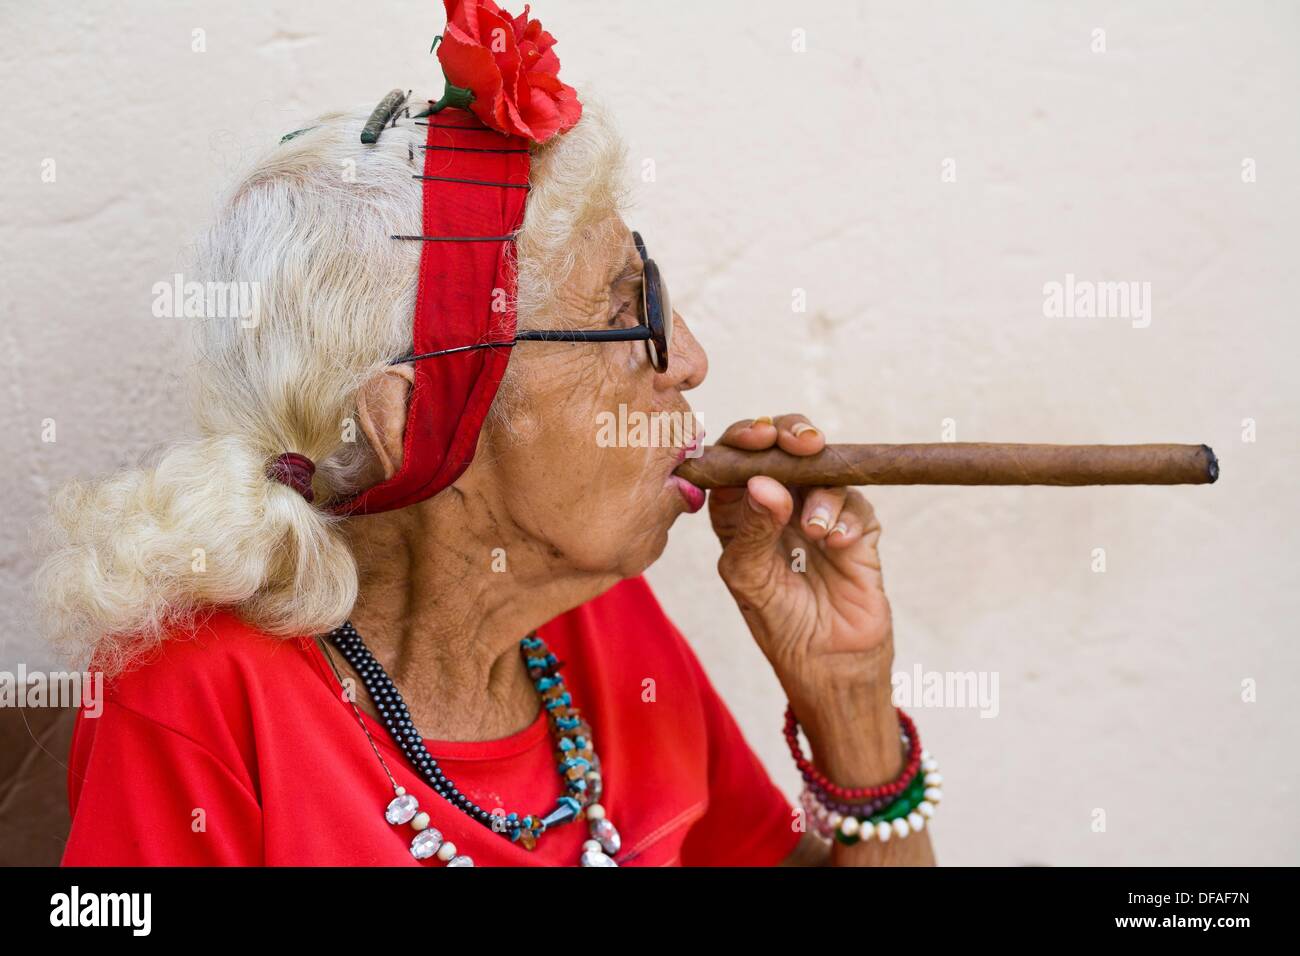 Cuba, Old woman smoking cigar Stock Photo